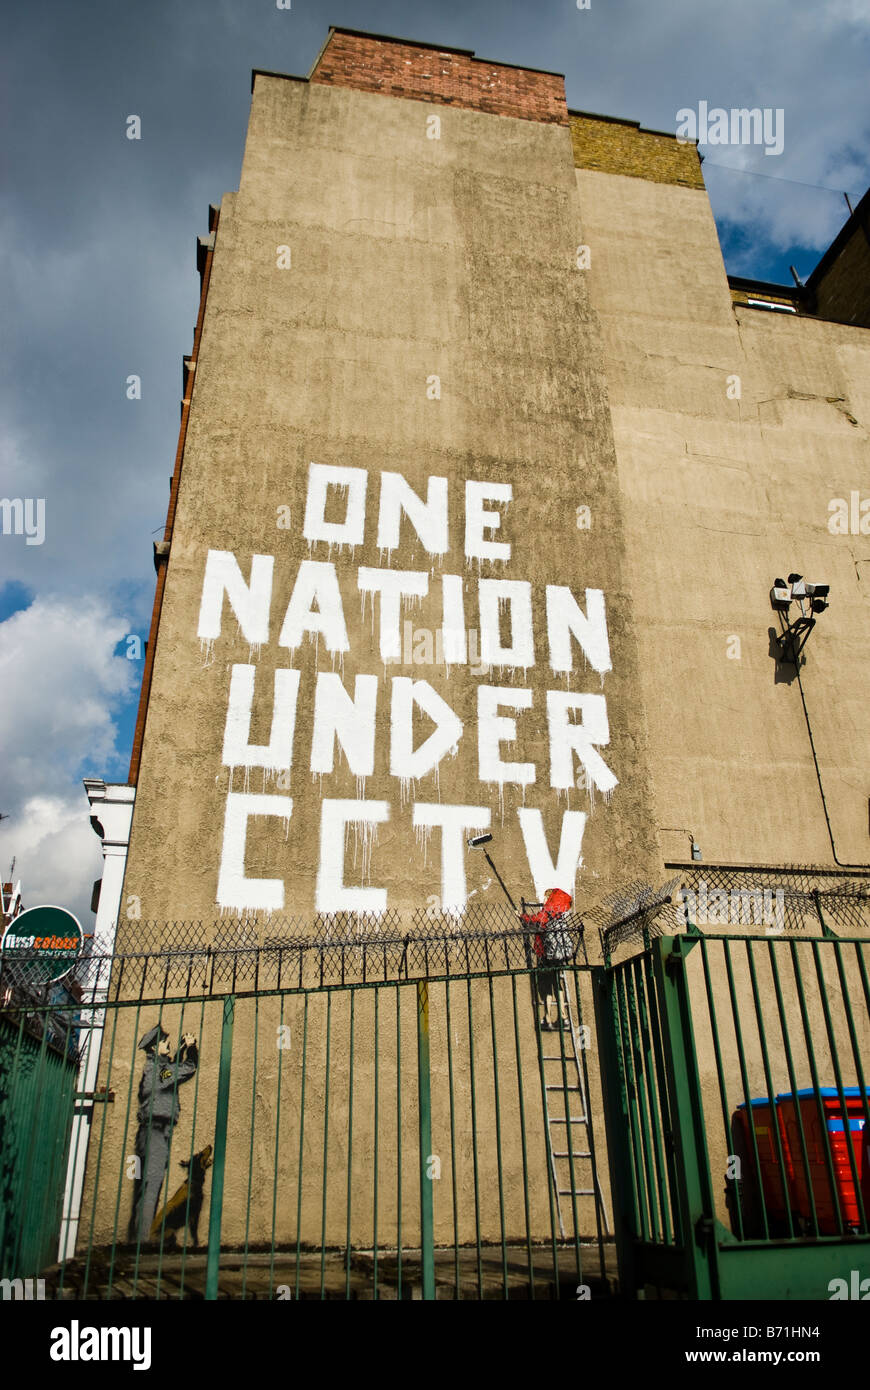 Graffiti Banksy - une nation sous tous les CCTV Banque D'Images